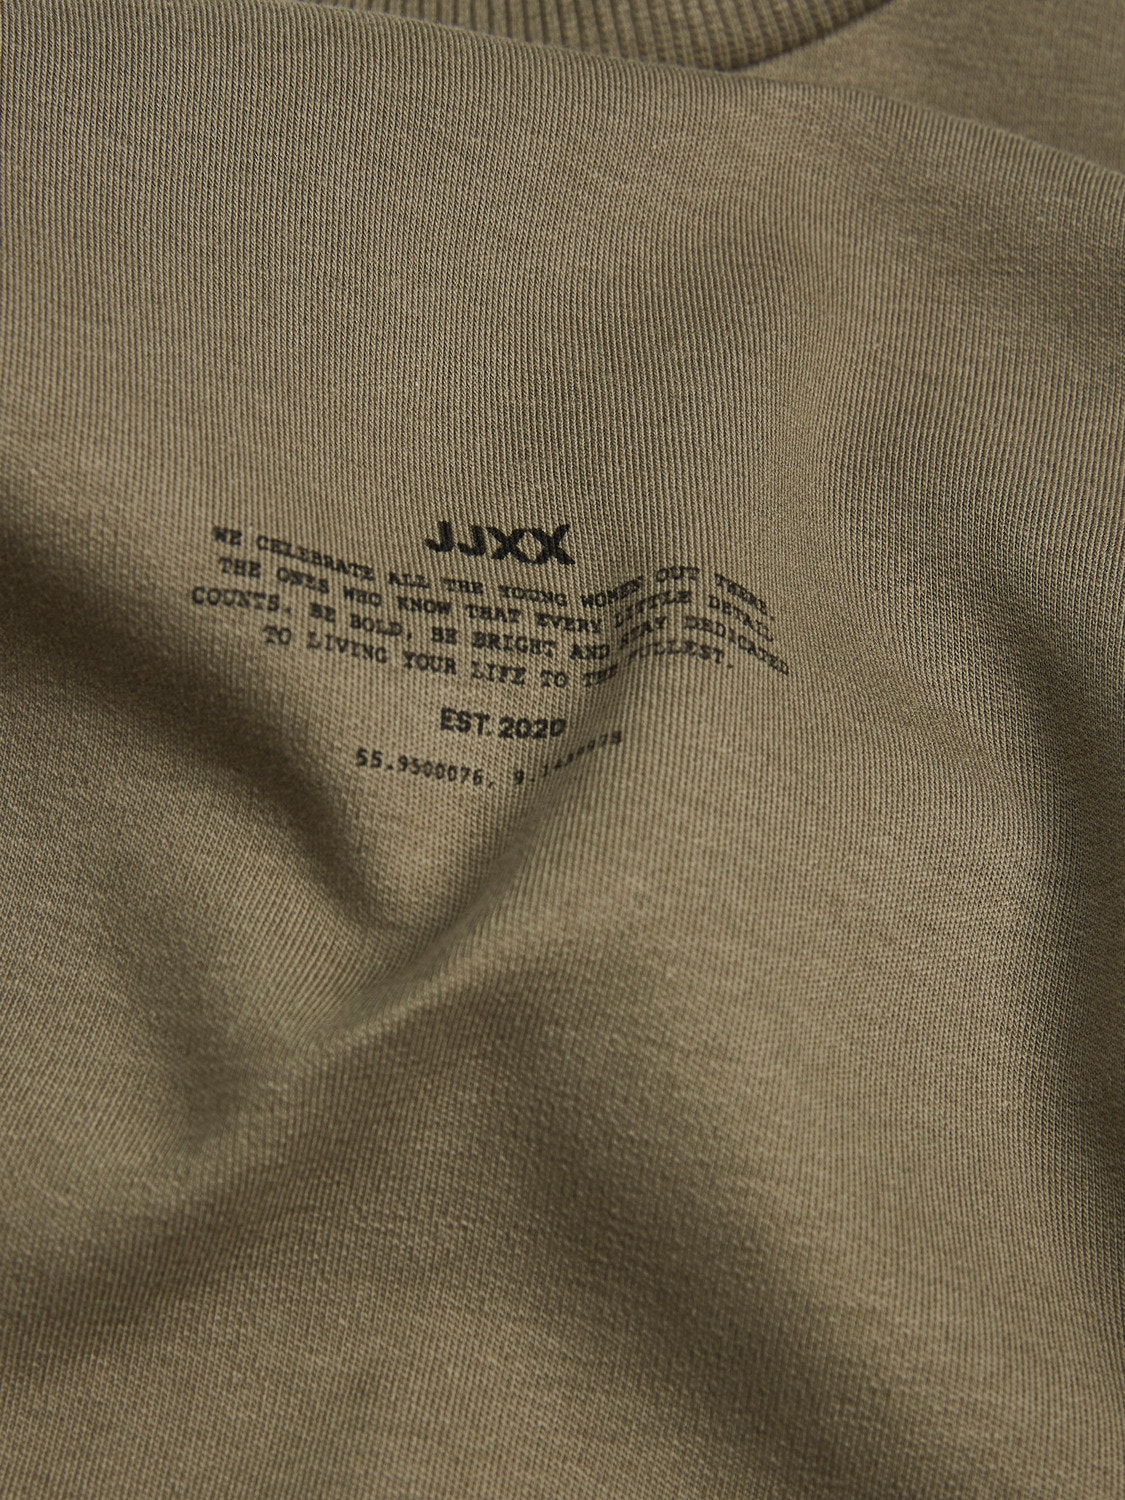 JJXX JXISA T-shirt -Dusty Olive - 12241203